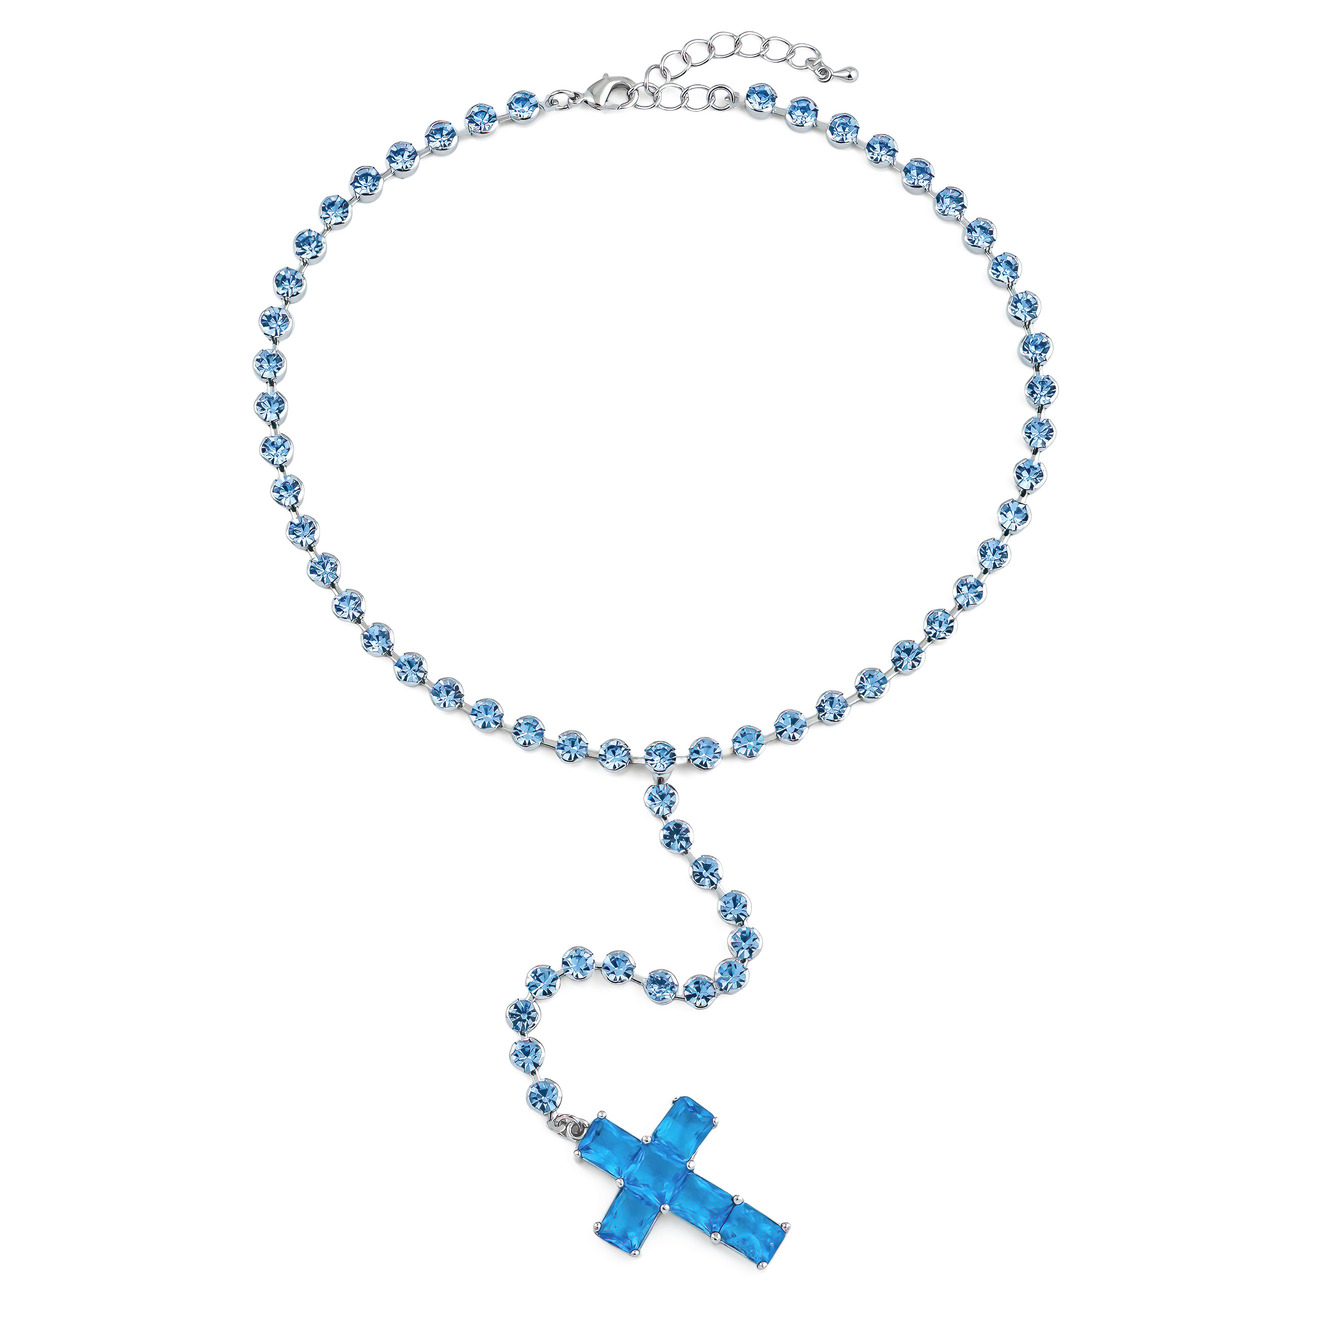 Herald Percy Серебристое колье-галстук с голубыми кристаллами в виде креста herald percy серебристое незамкнутое кольцо с кристаллами